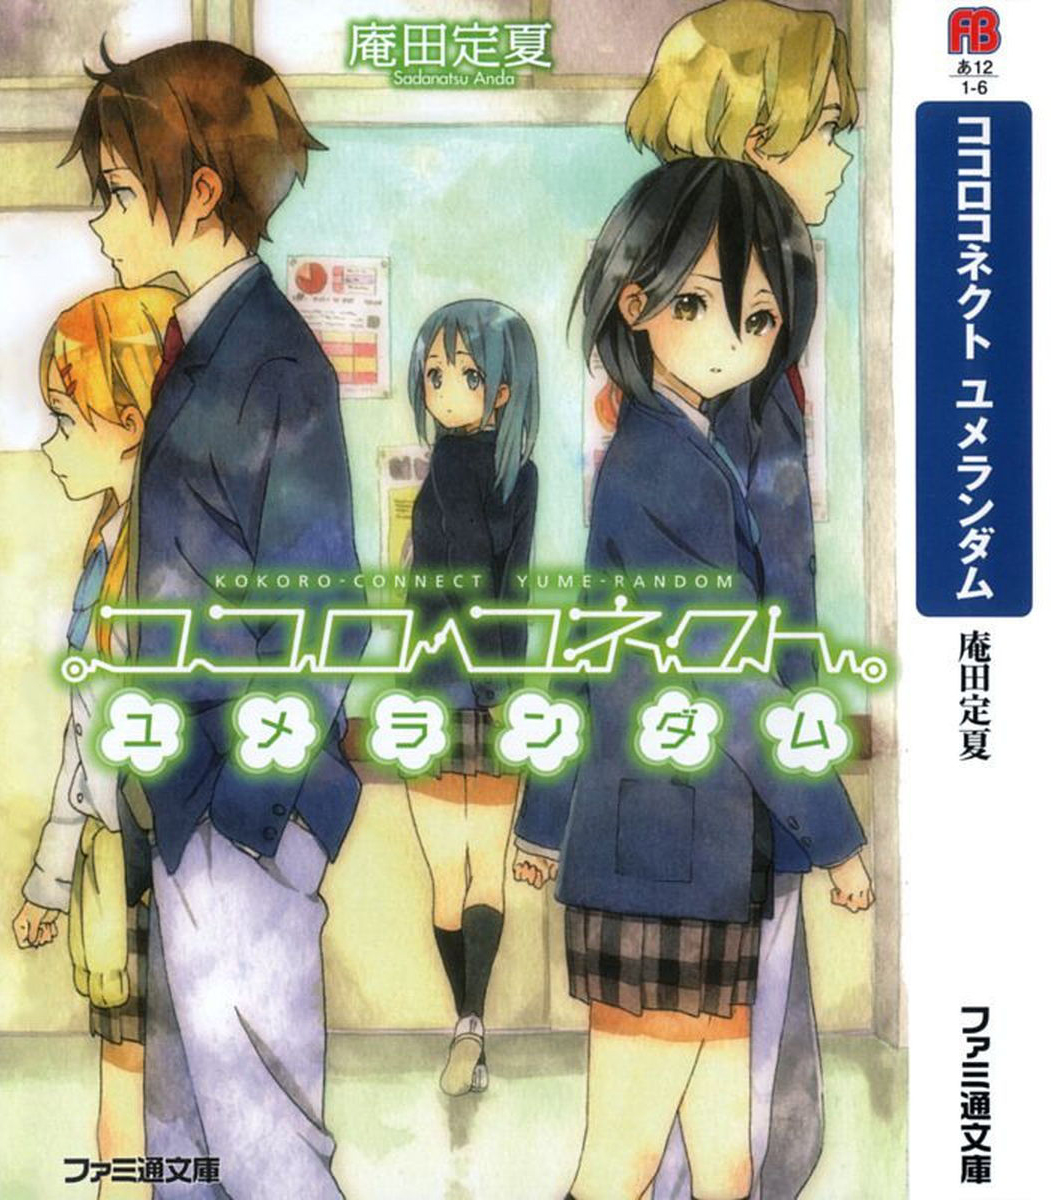 Kokoro Connect Volume 7: Yume Random (English Edition) - eBooks em